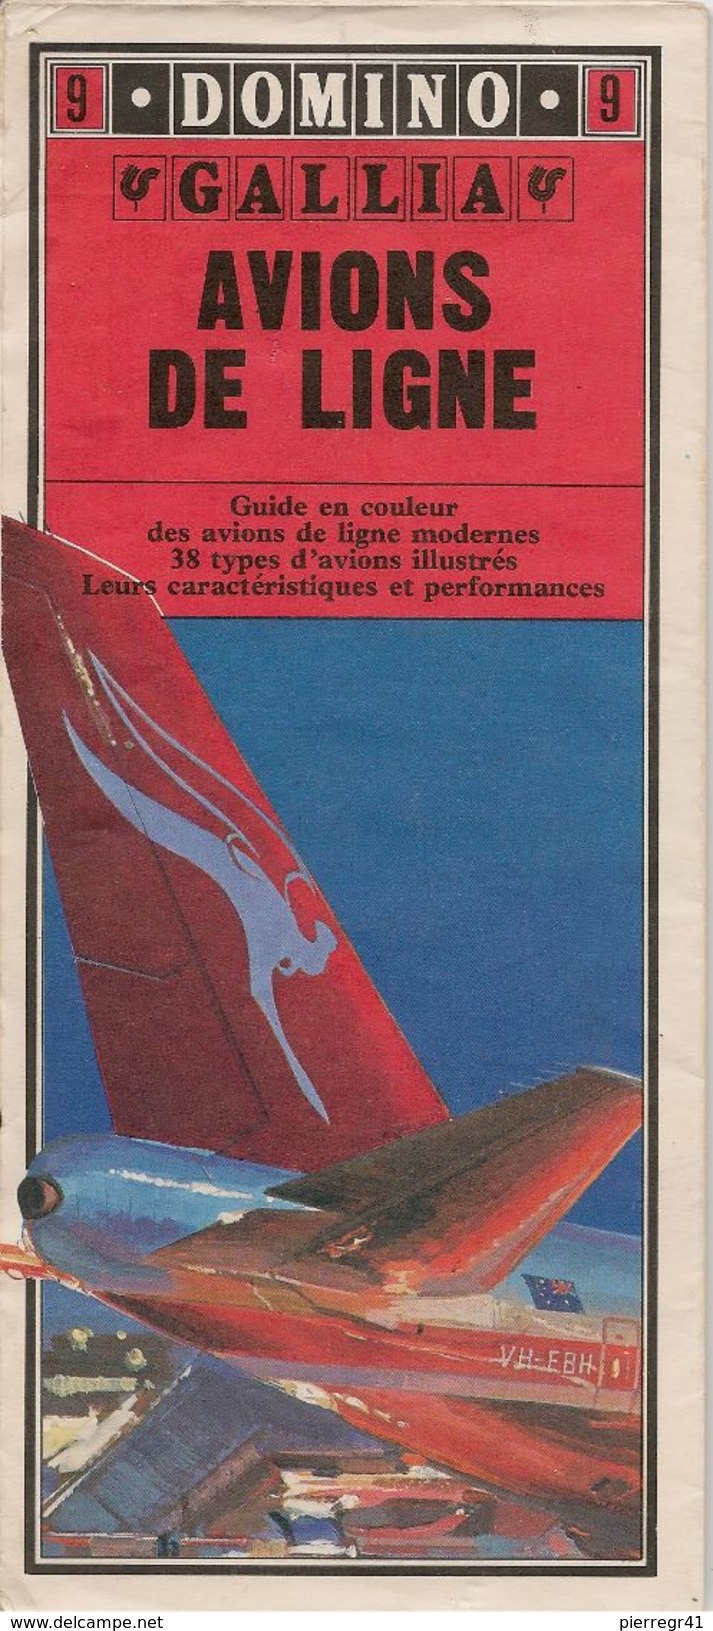 GUIDE-DOMINO-N°9-GALLIA-1979-AVIONS De LIGNE-38 Types D AVIONS De LIGNES MODERNES-Ft CARTE ROUTIERE-TBE- - Boeken